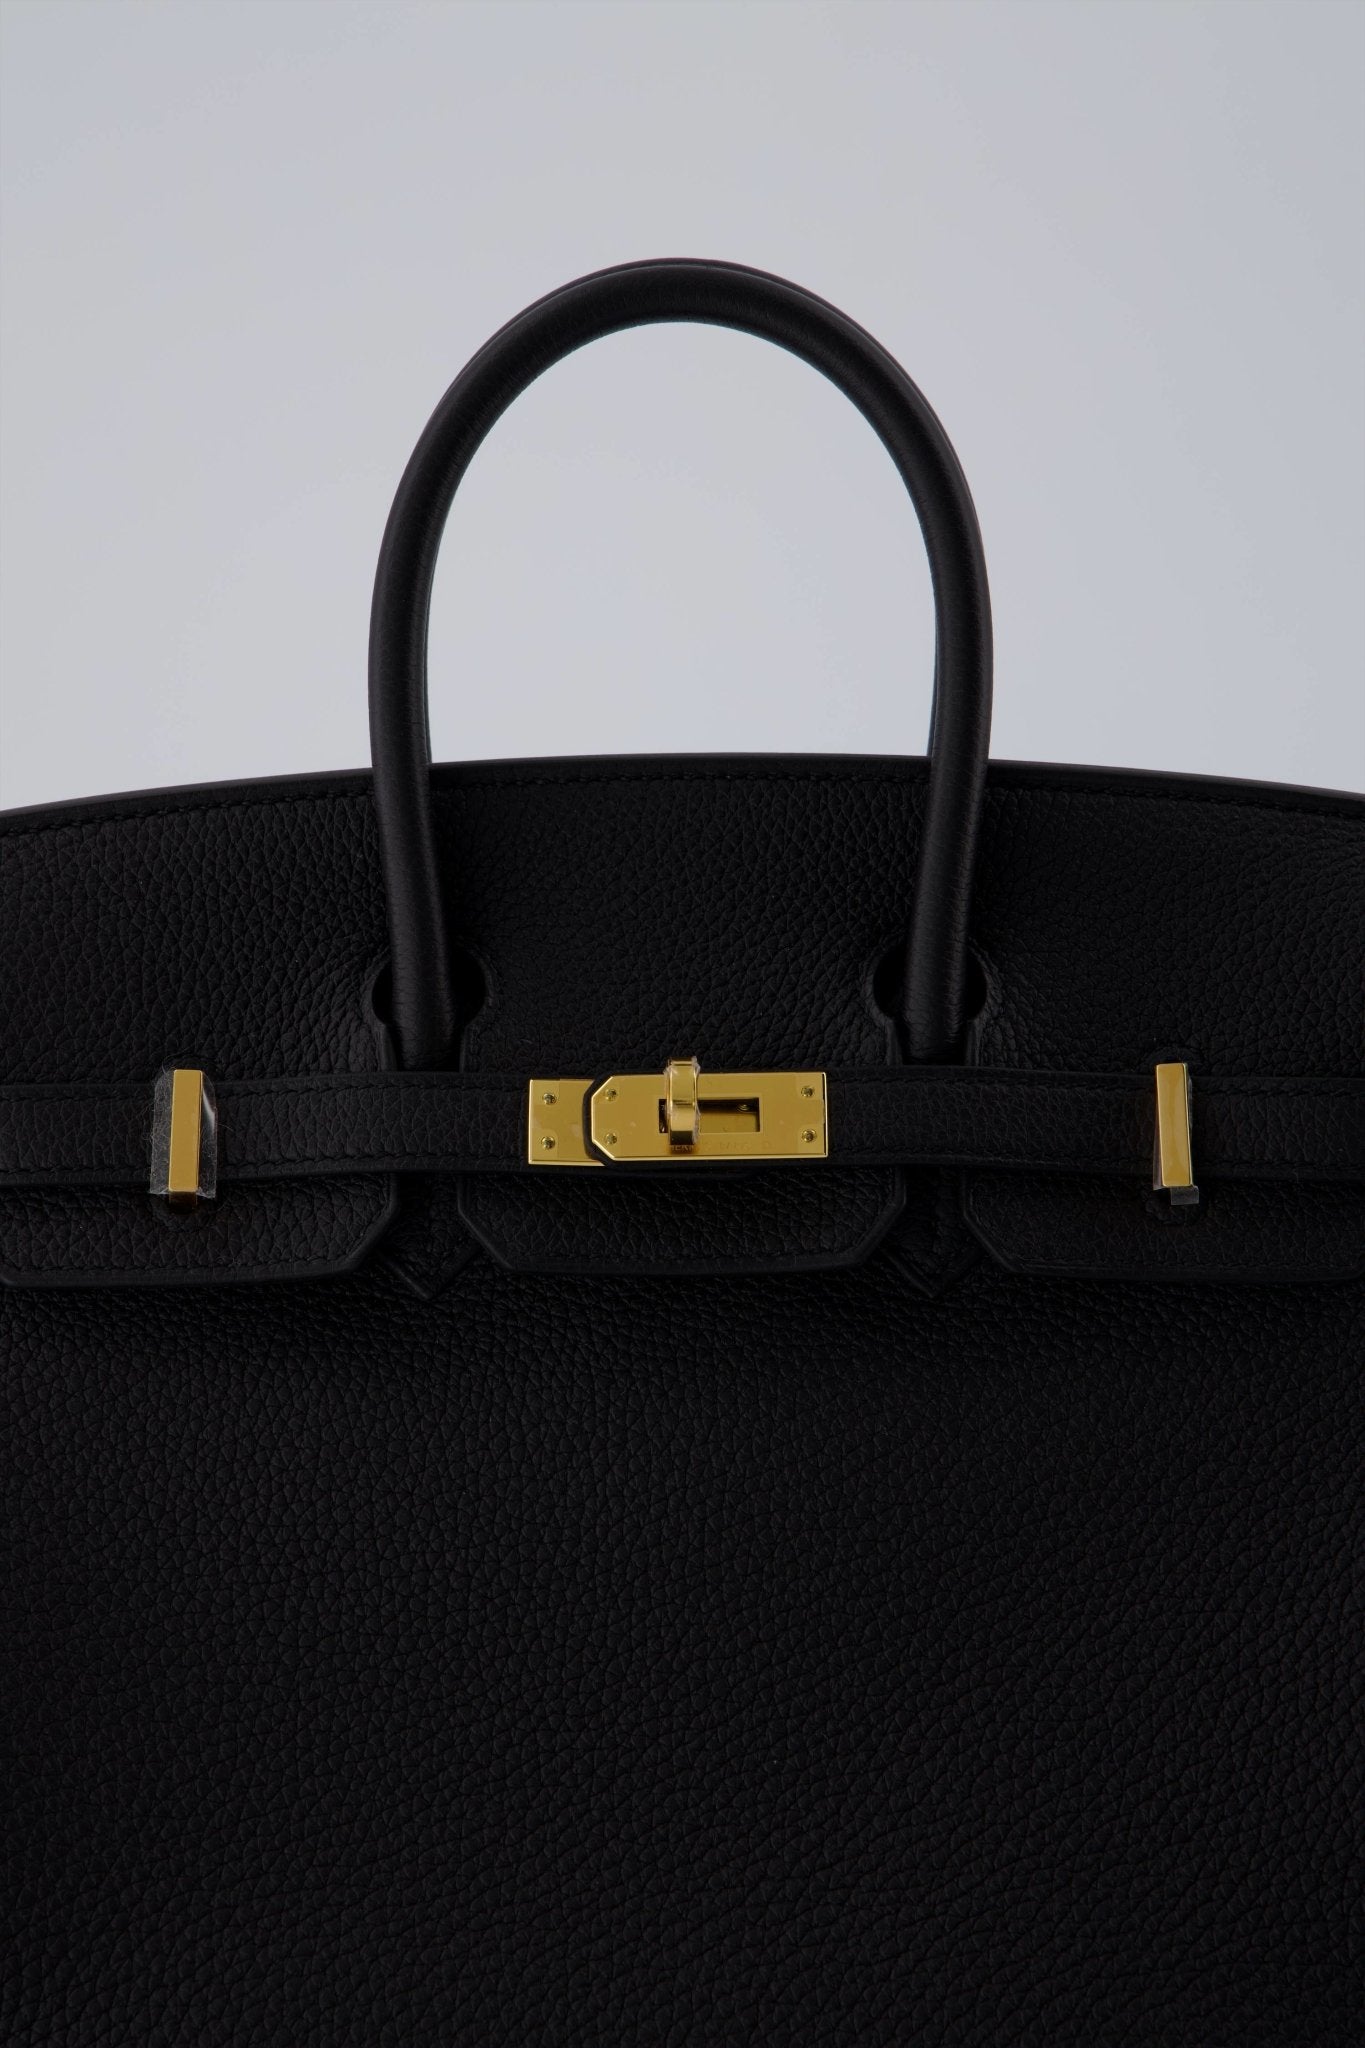 Hermes Birkin 25 Black Bag Gold Hardware Togo Leather For Sale at